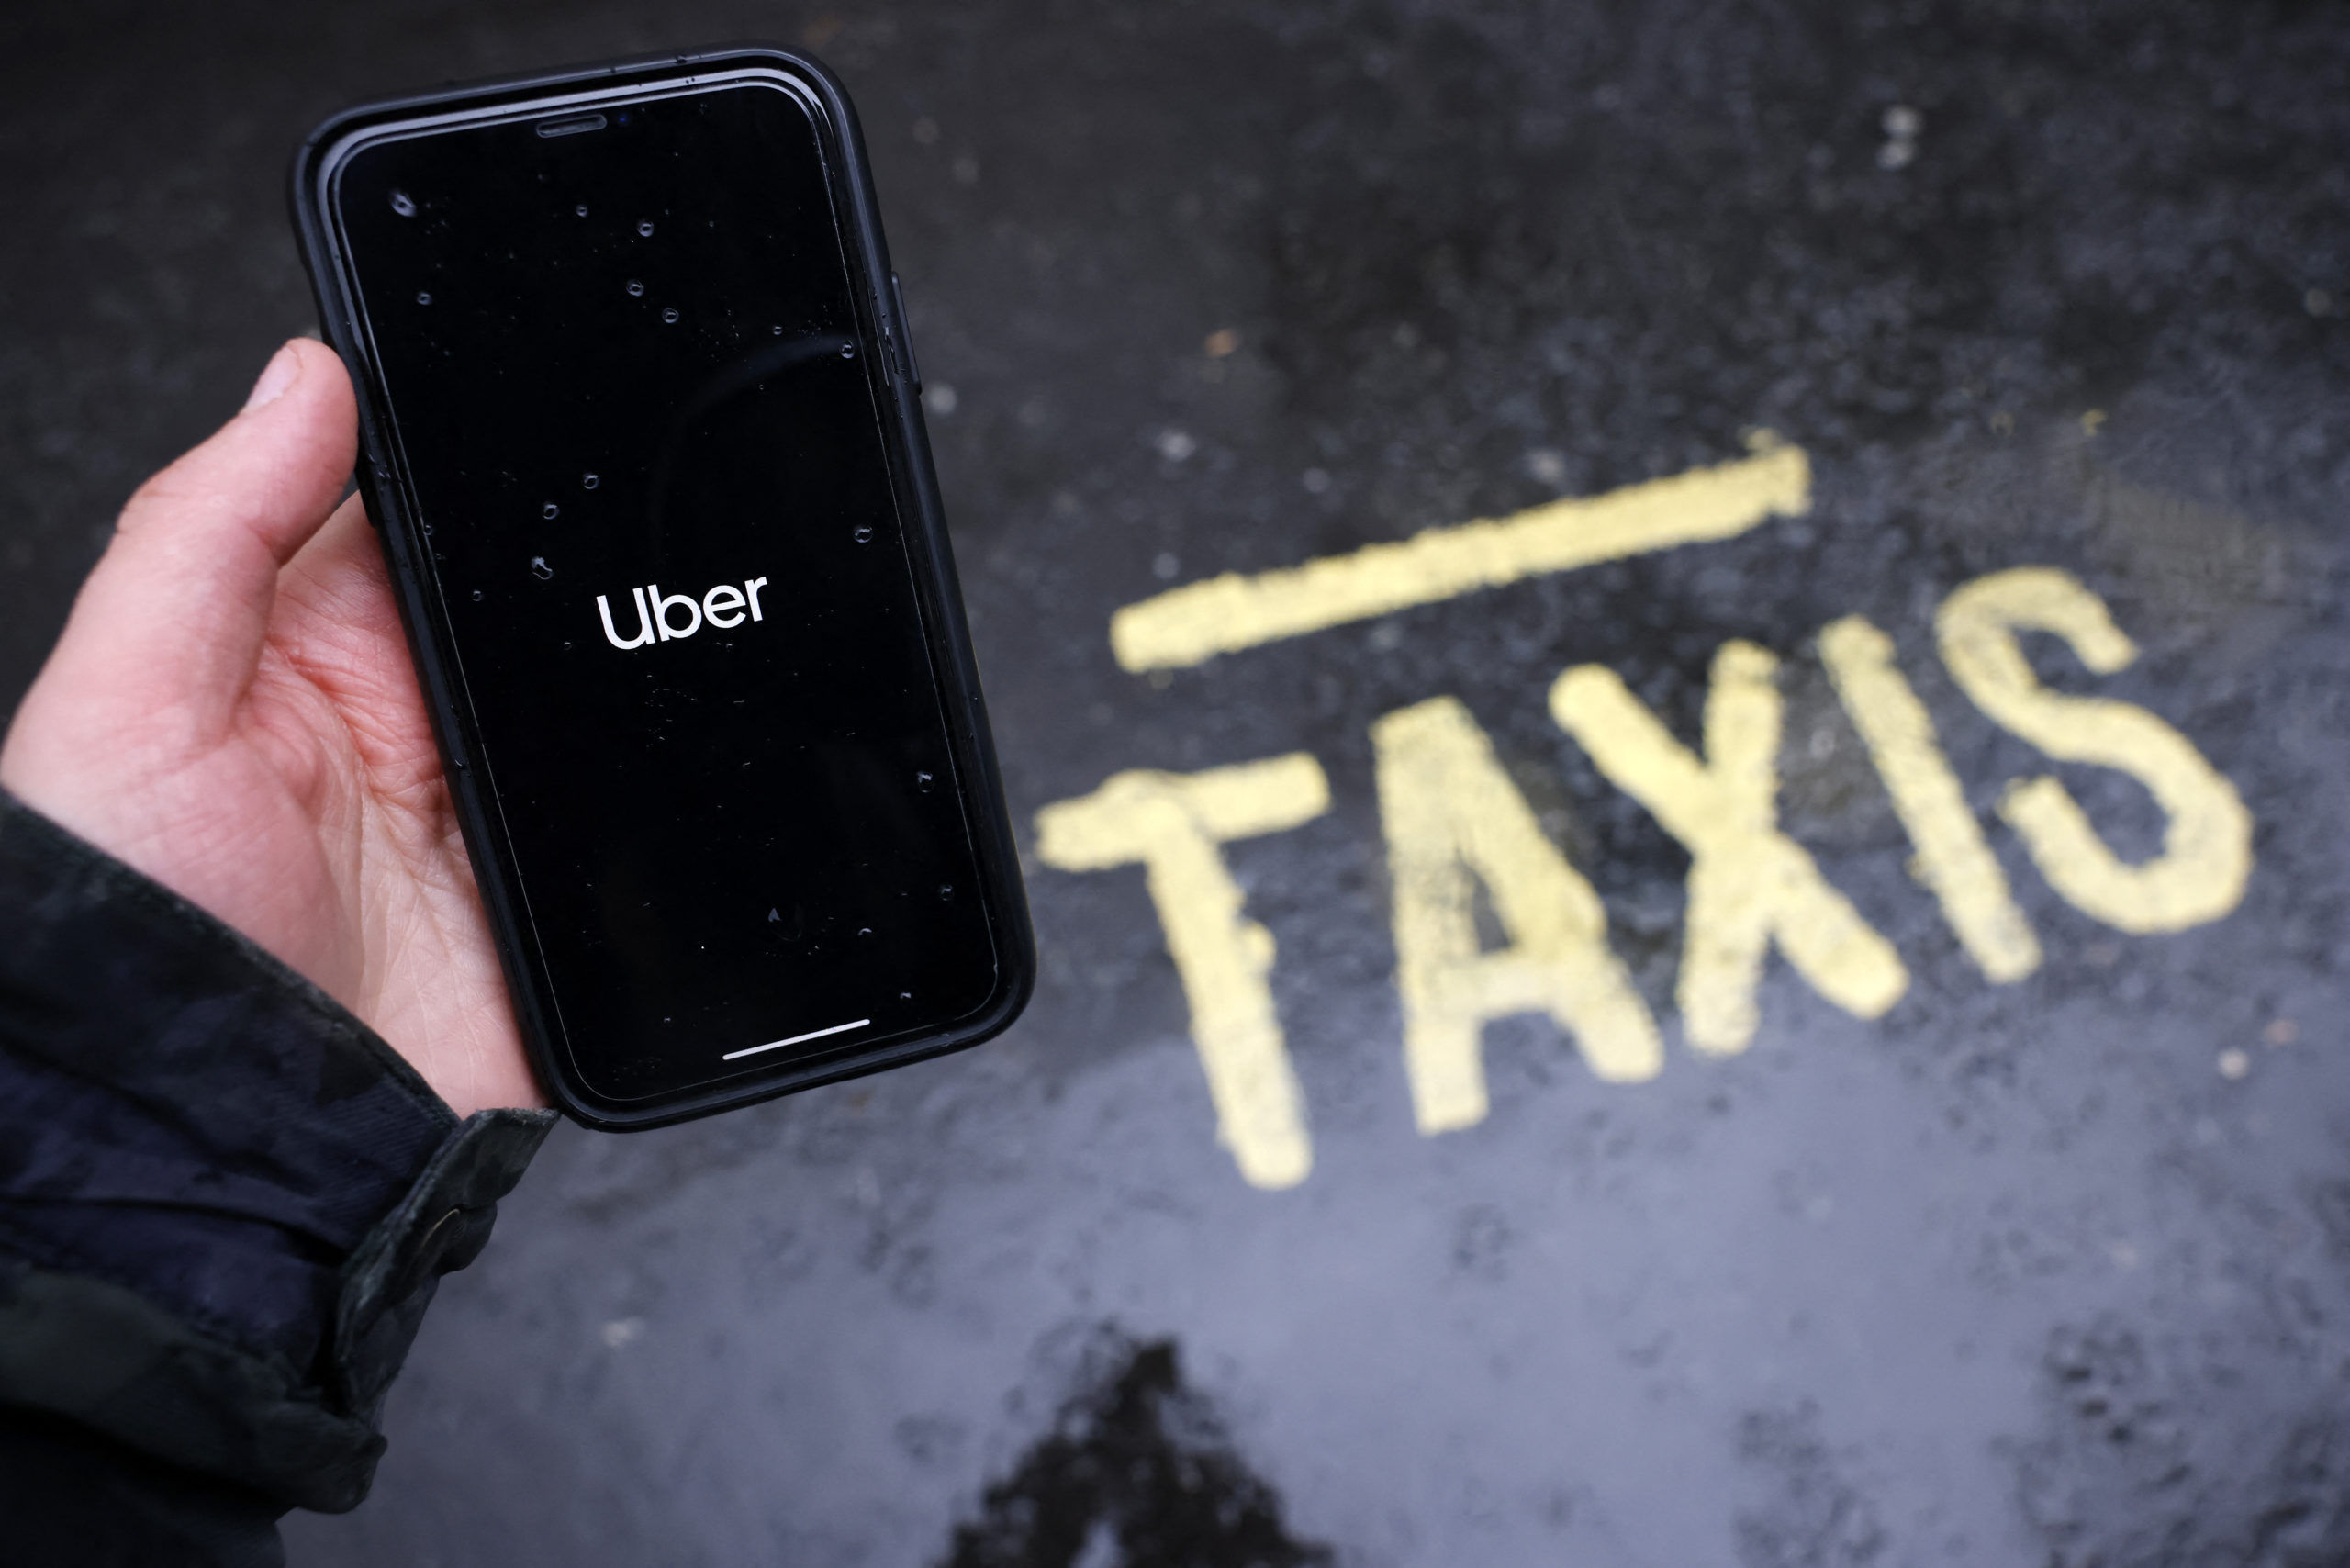 Le secteur des taxis bruxellois prêt à engager 600 chauffeurs Uber